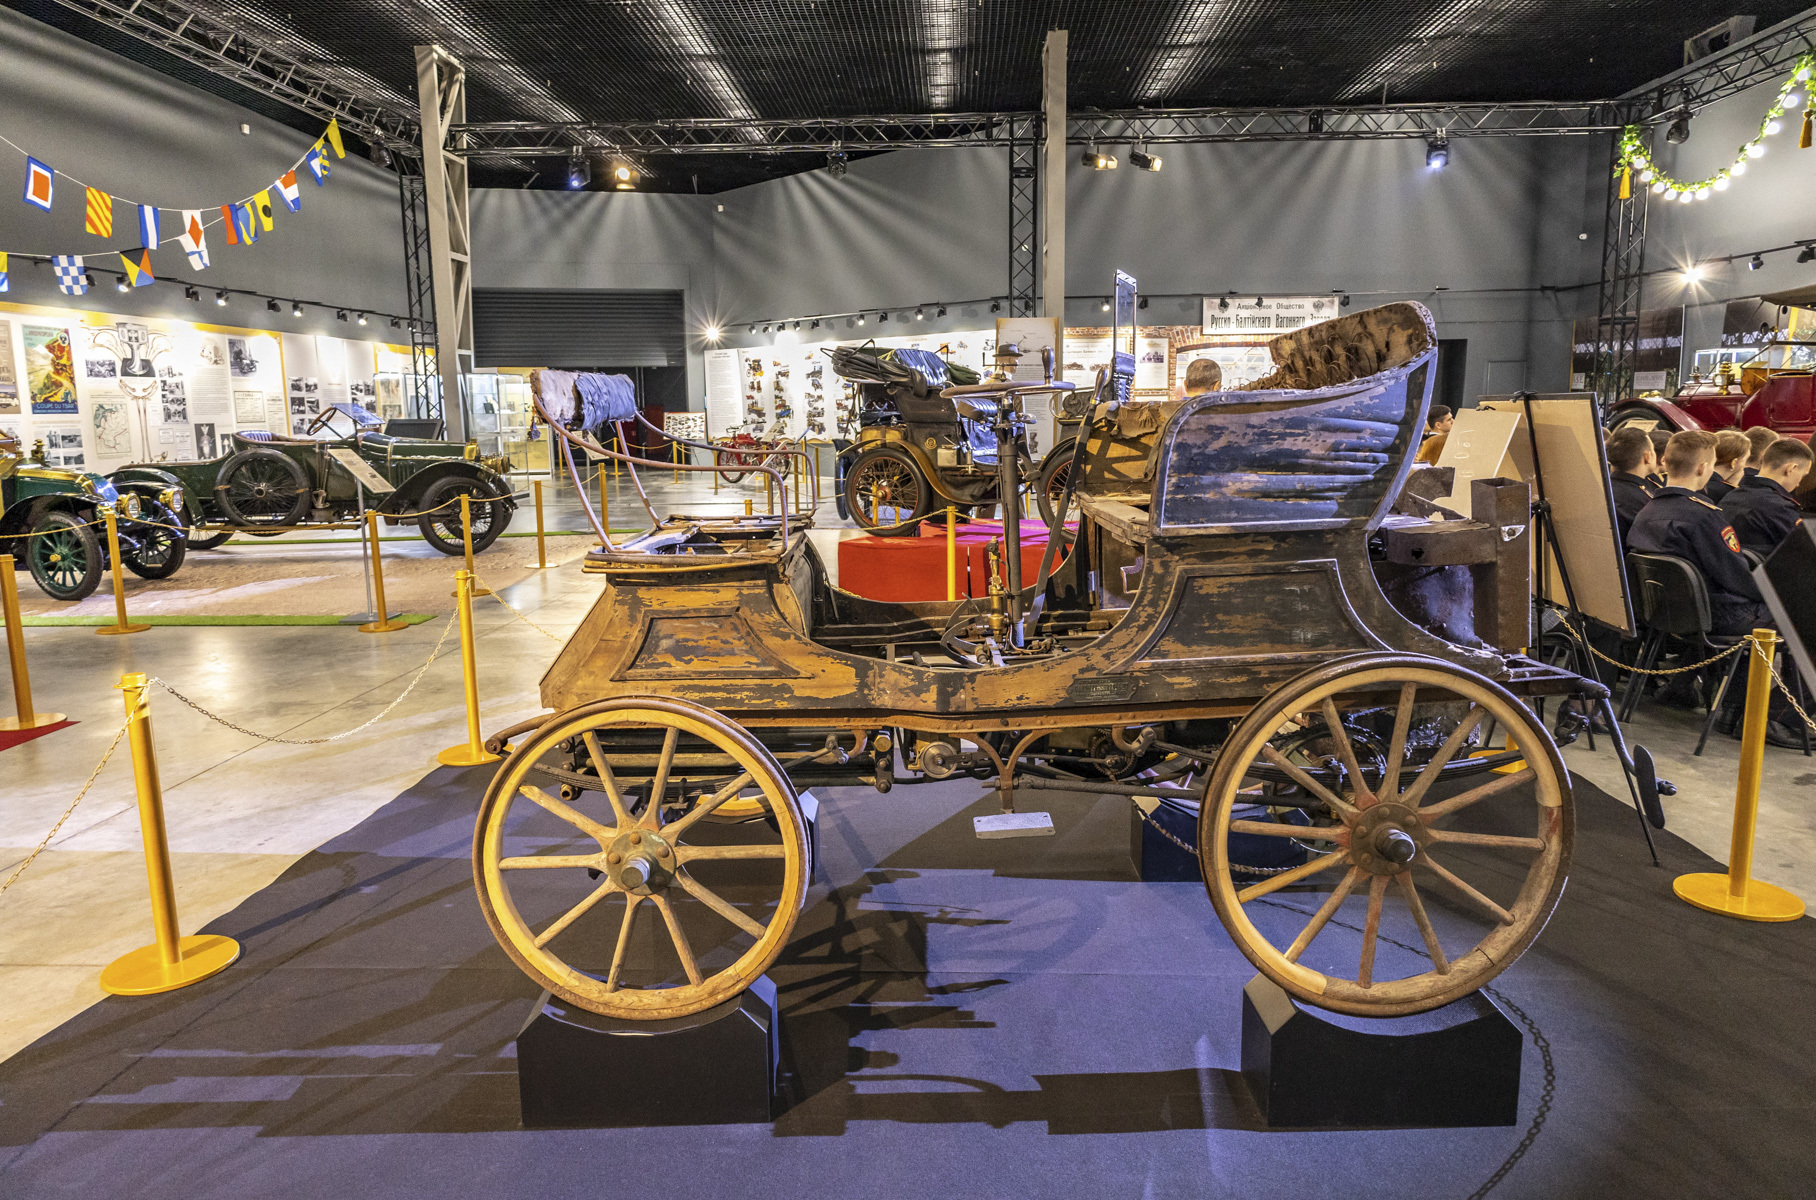 Автомобиль предположительно 1901 года выпуска был найден, только представьте, в одном из сараев Ленинградской области! Поразителен и сам факт находки, и то, что он сохранился в первозданном виде.